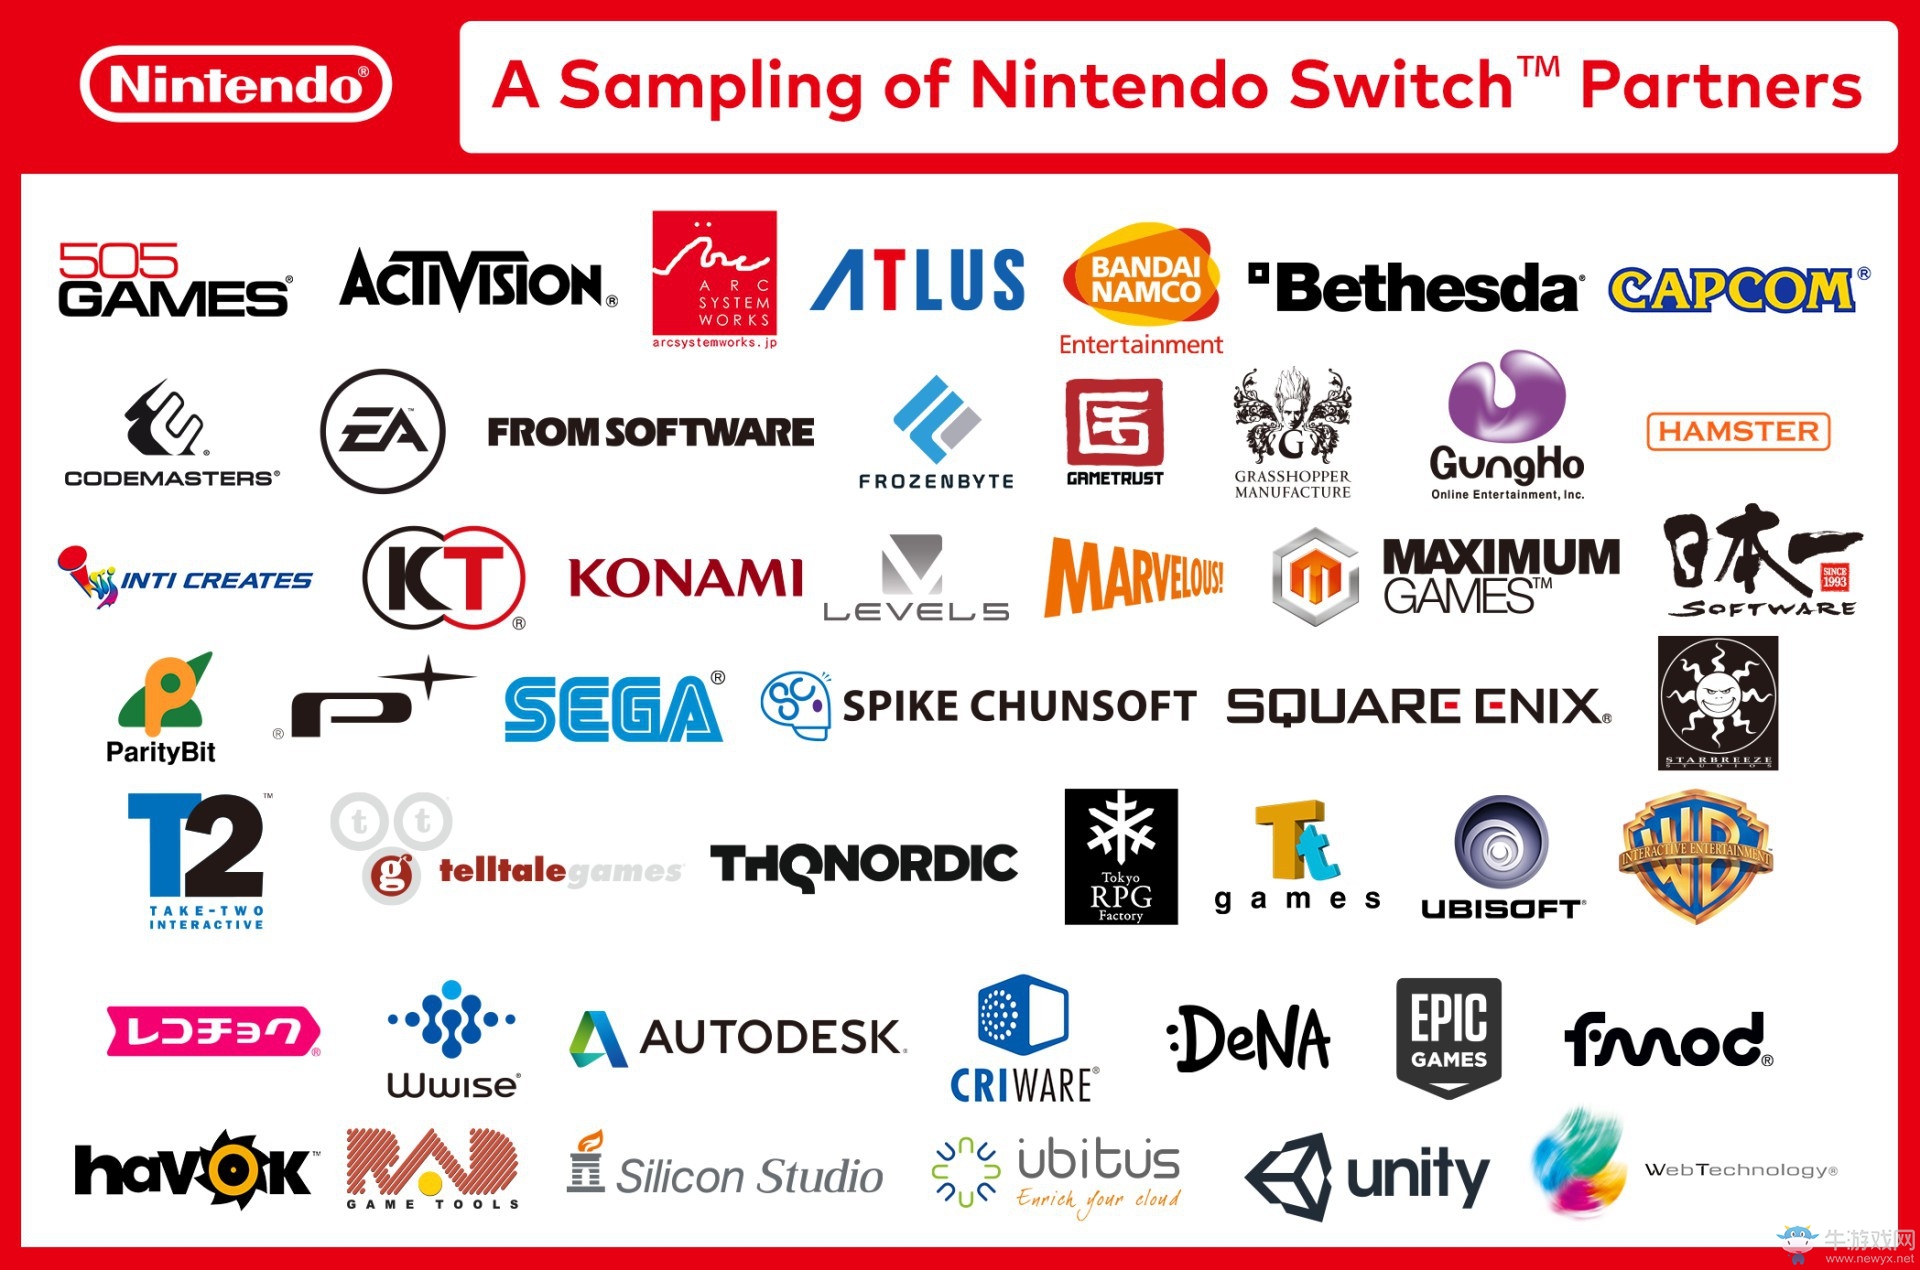 首批任天堂Switch预购竟如此火爆 不按套路出牌啊